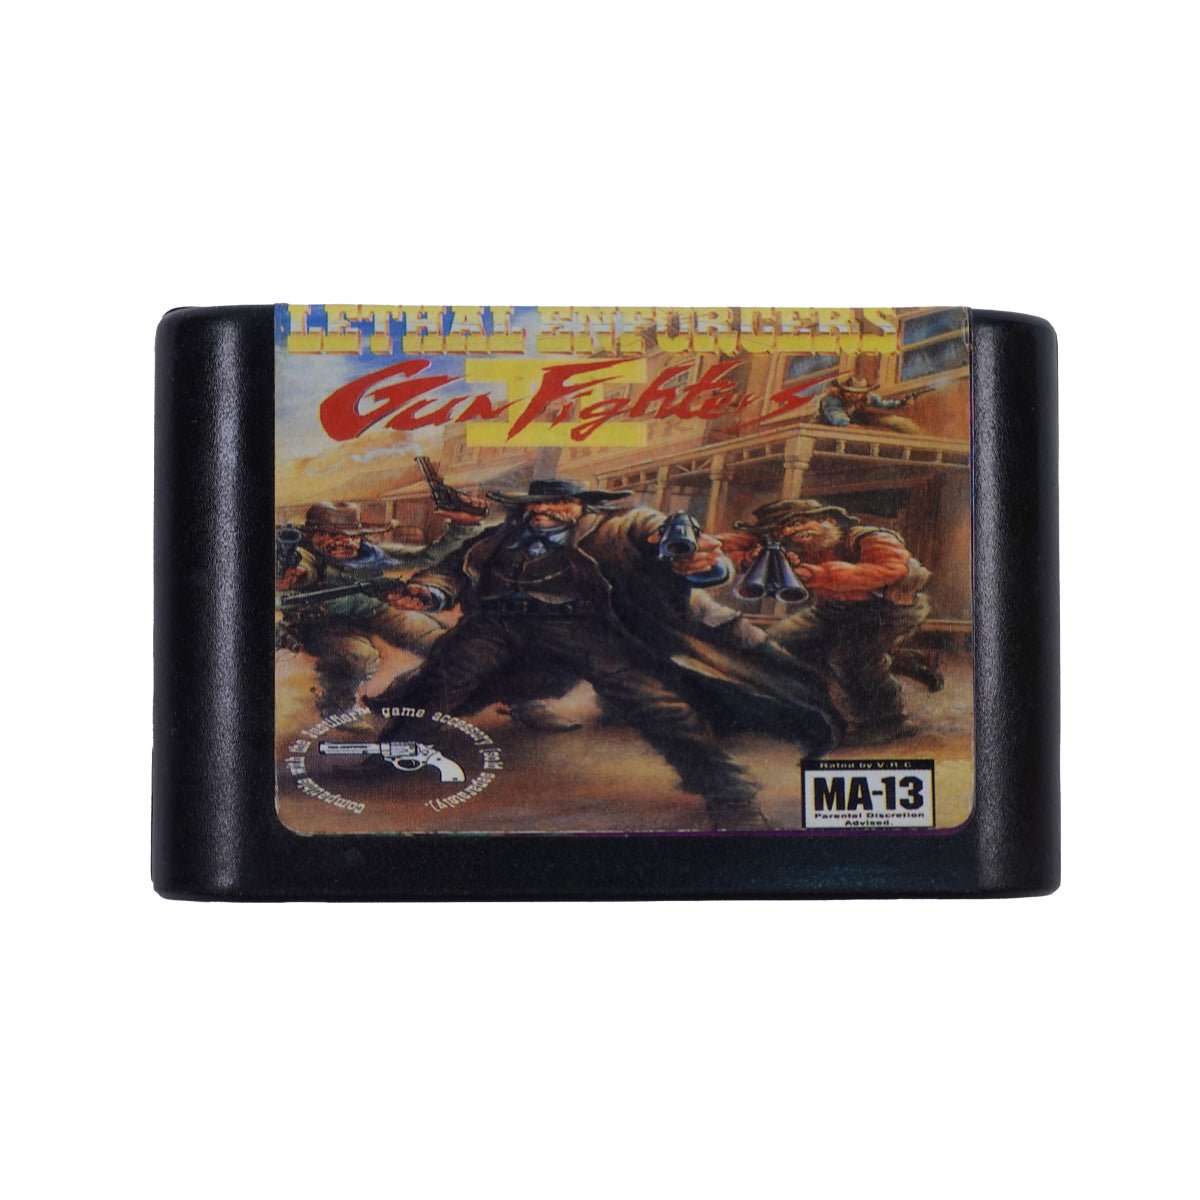 (Pre-Owned) Lethal Enforcers II: Gun Fighters - Sega - Store 974 | ستور ٩٧٤